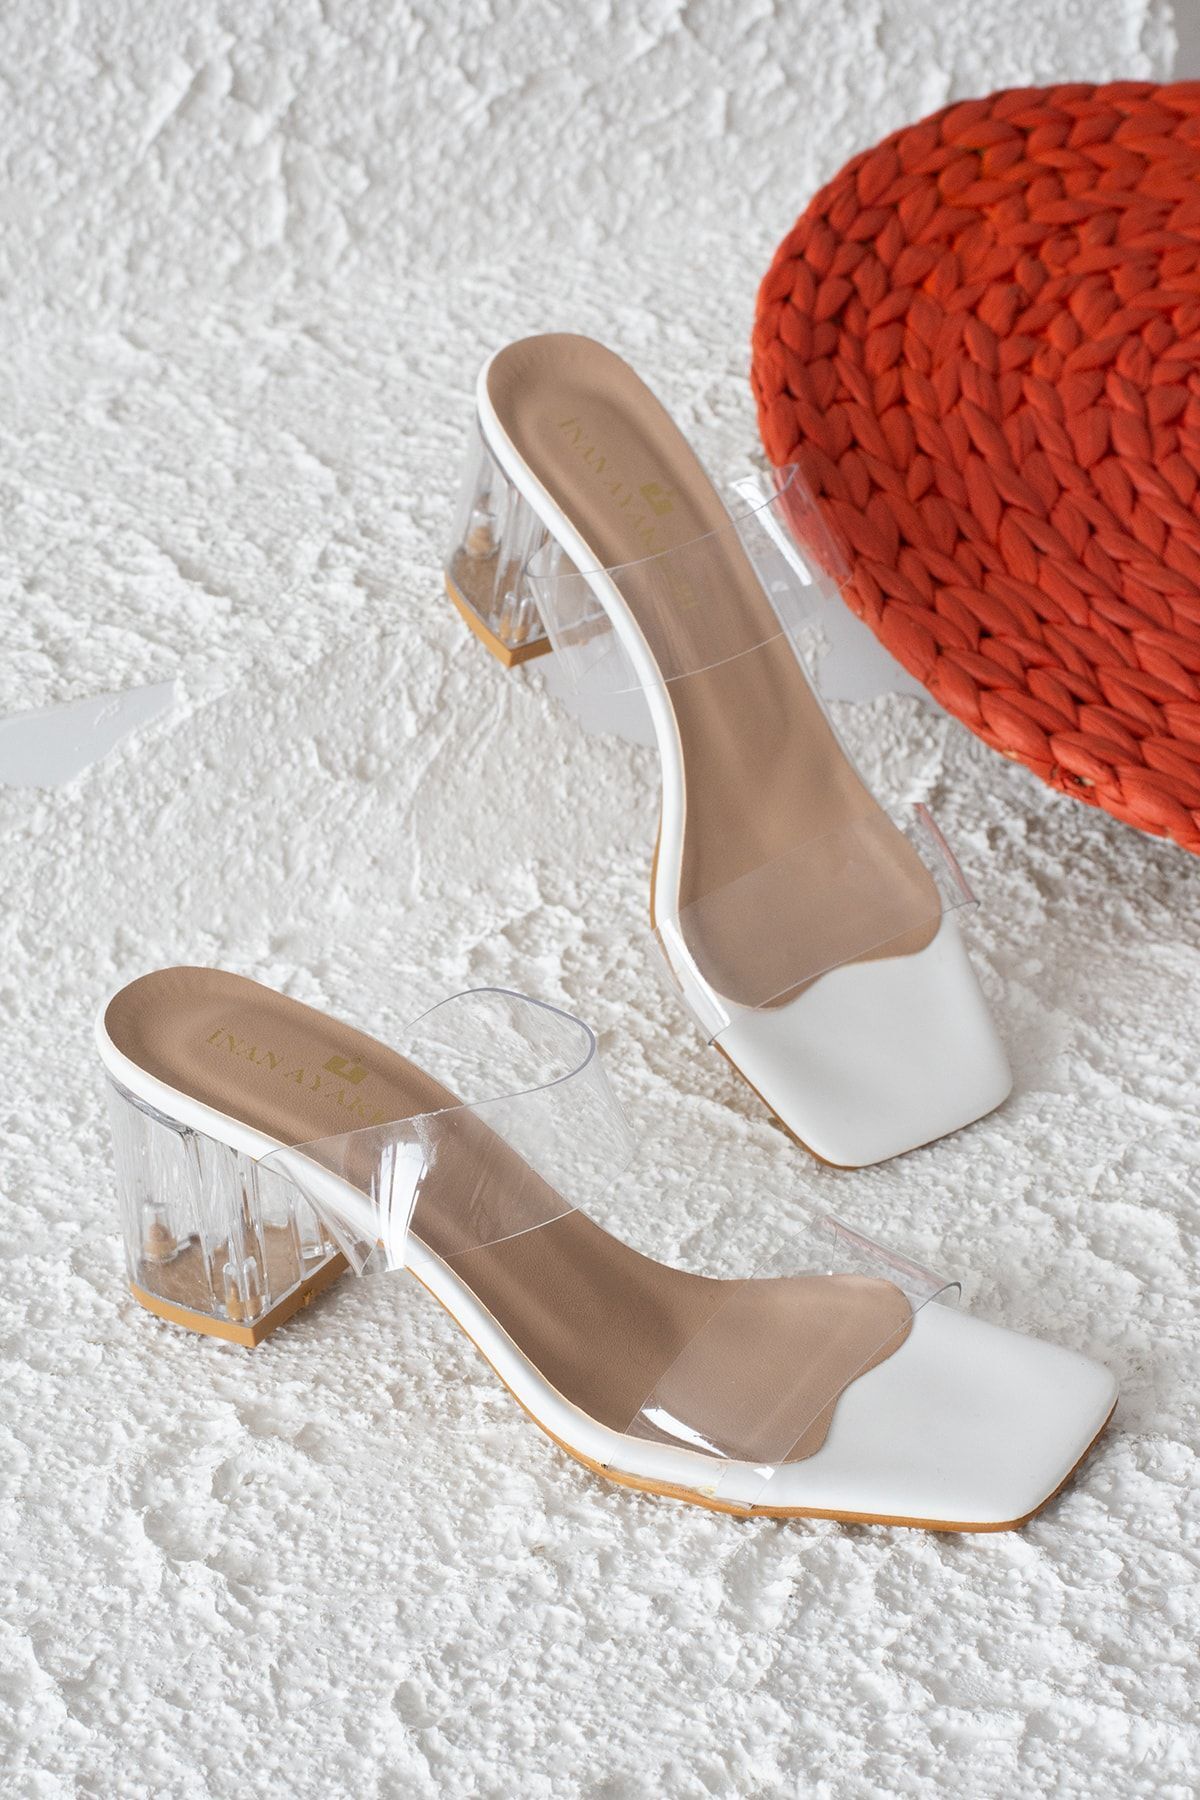 Kadın Beyaz Şeffaf Bant&şeffaf Topuklu Ayakkabı 6 Cm Topuk